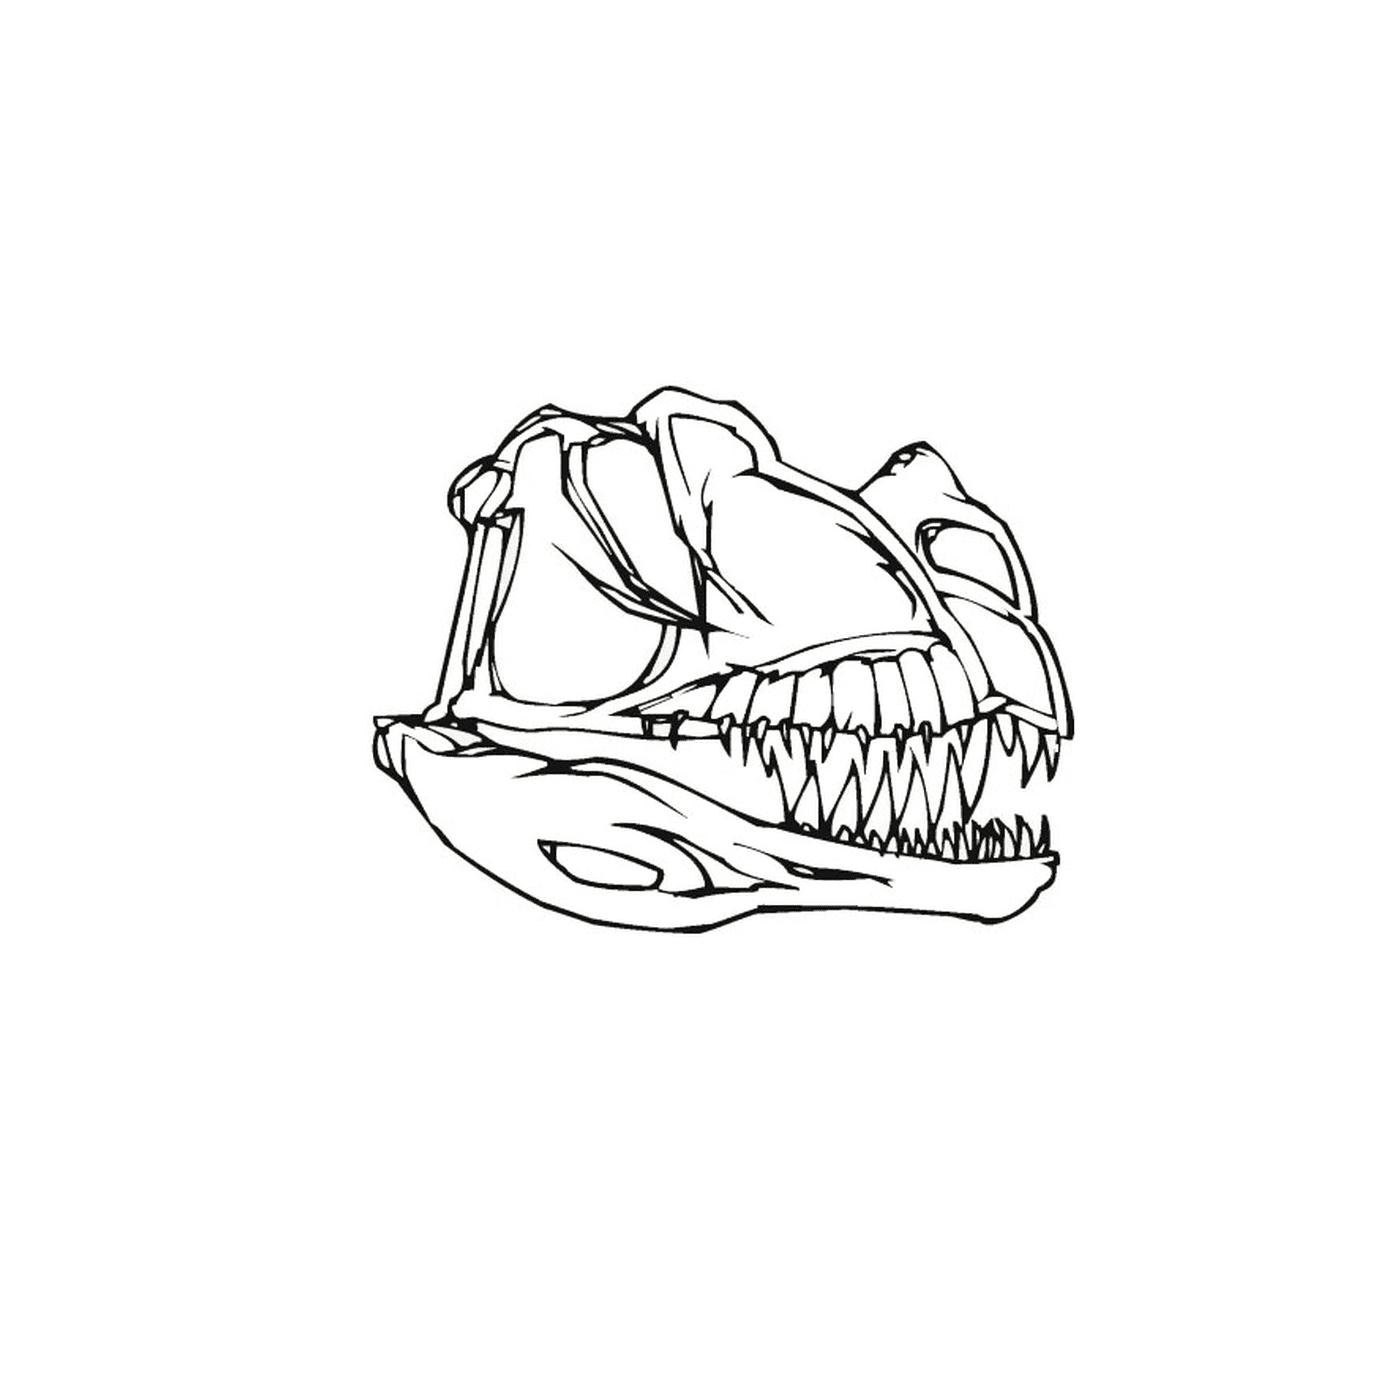   Le crâne d'un dinosaure avec des dents 